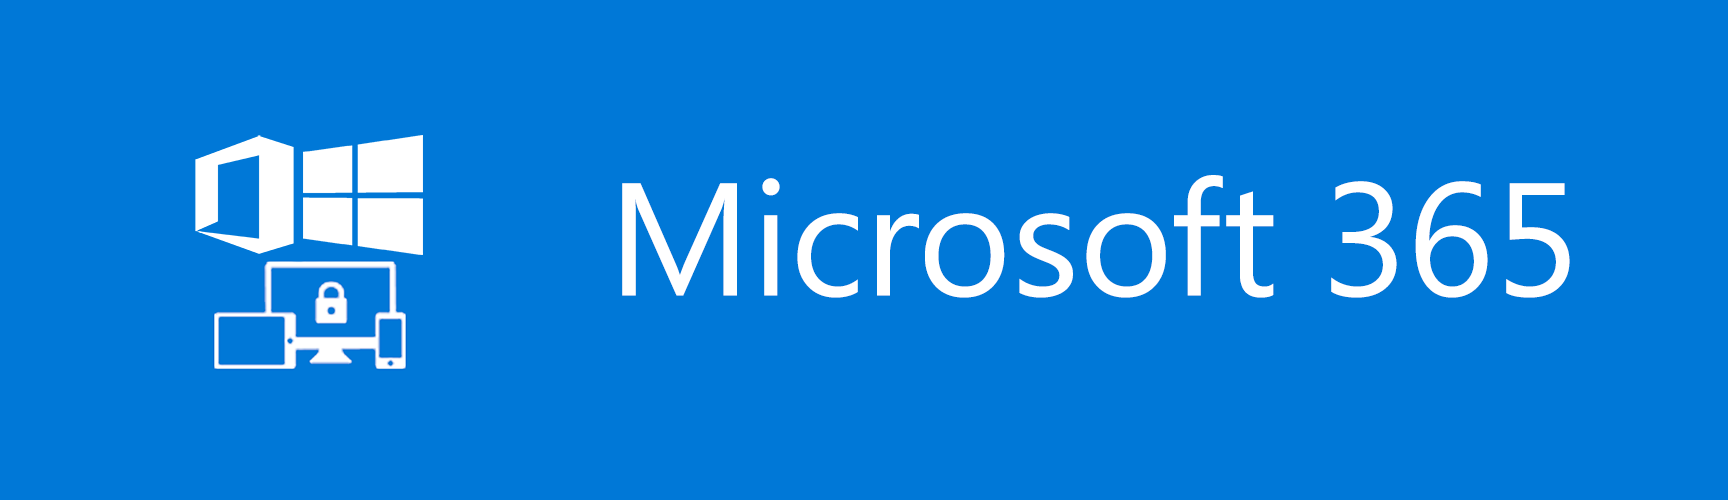 Microsft 365 Enterprise vs Microsoft 365 Business ...